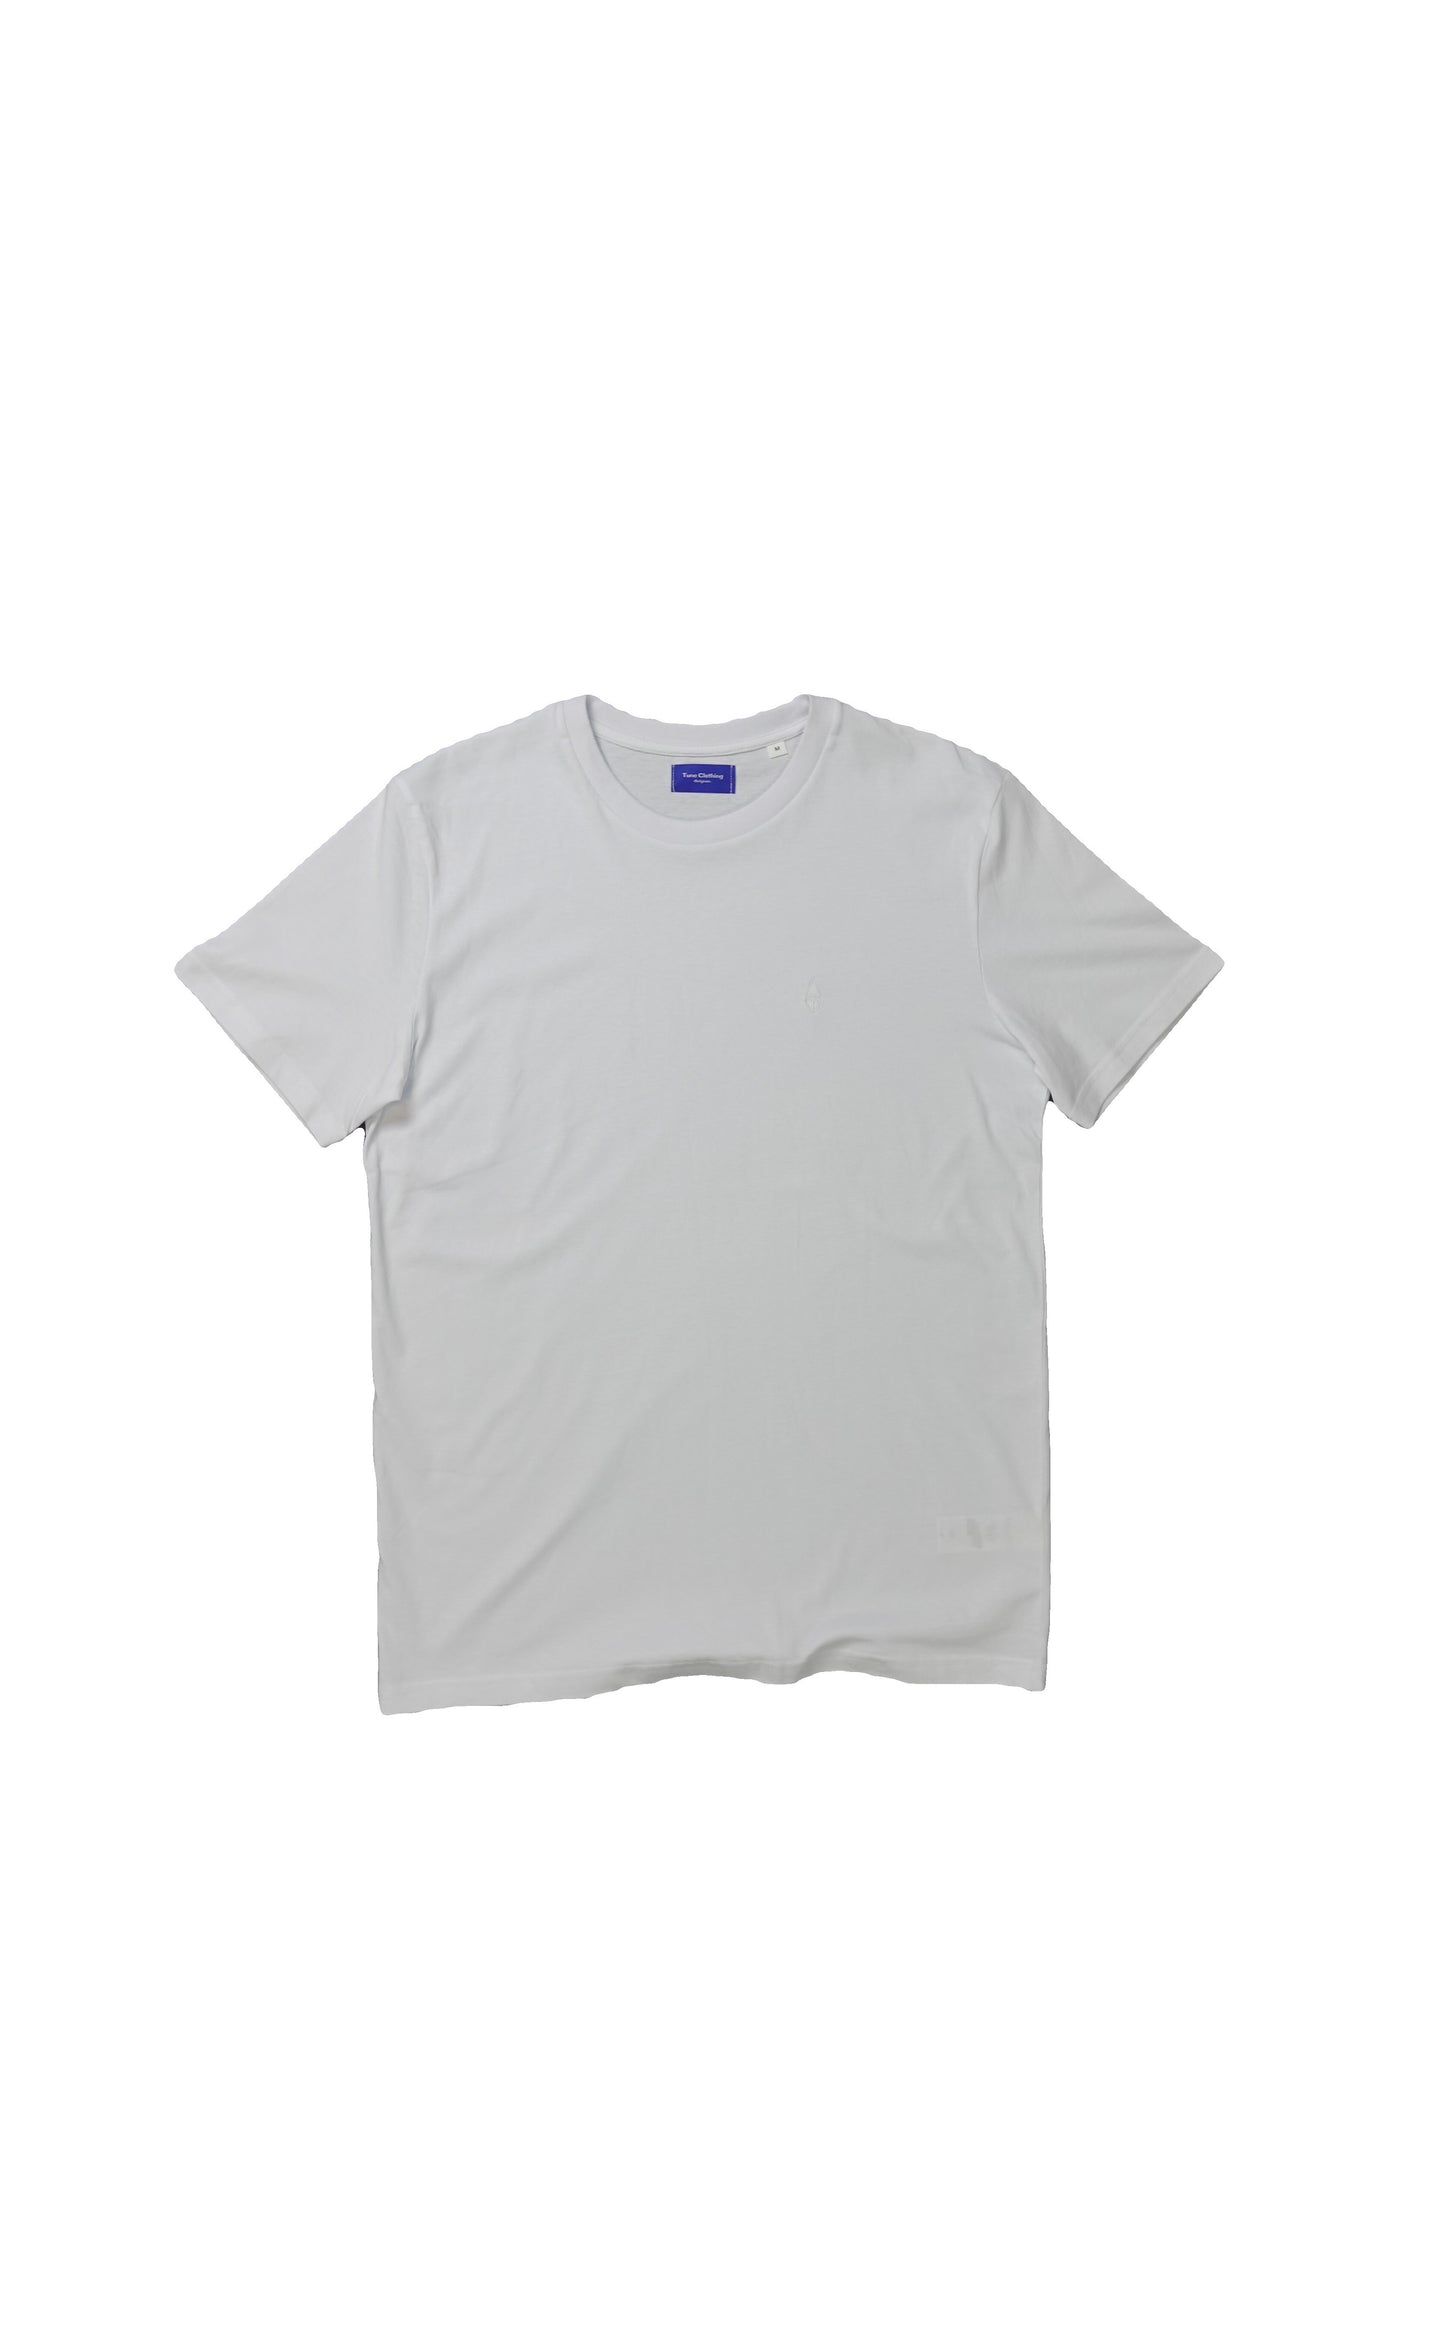 cotton jersey crewneck T-shirt fade logo